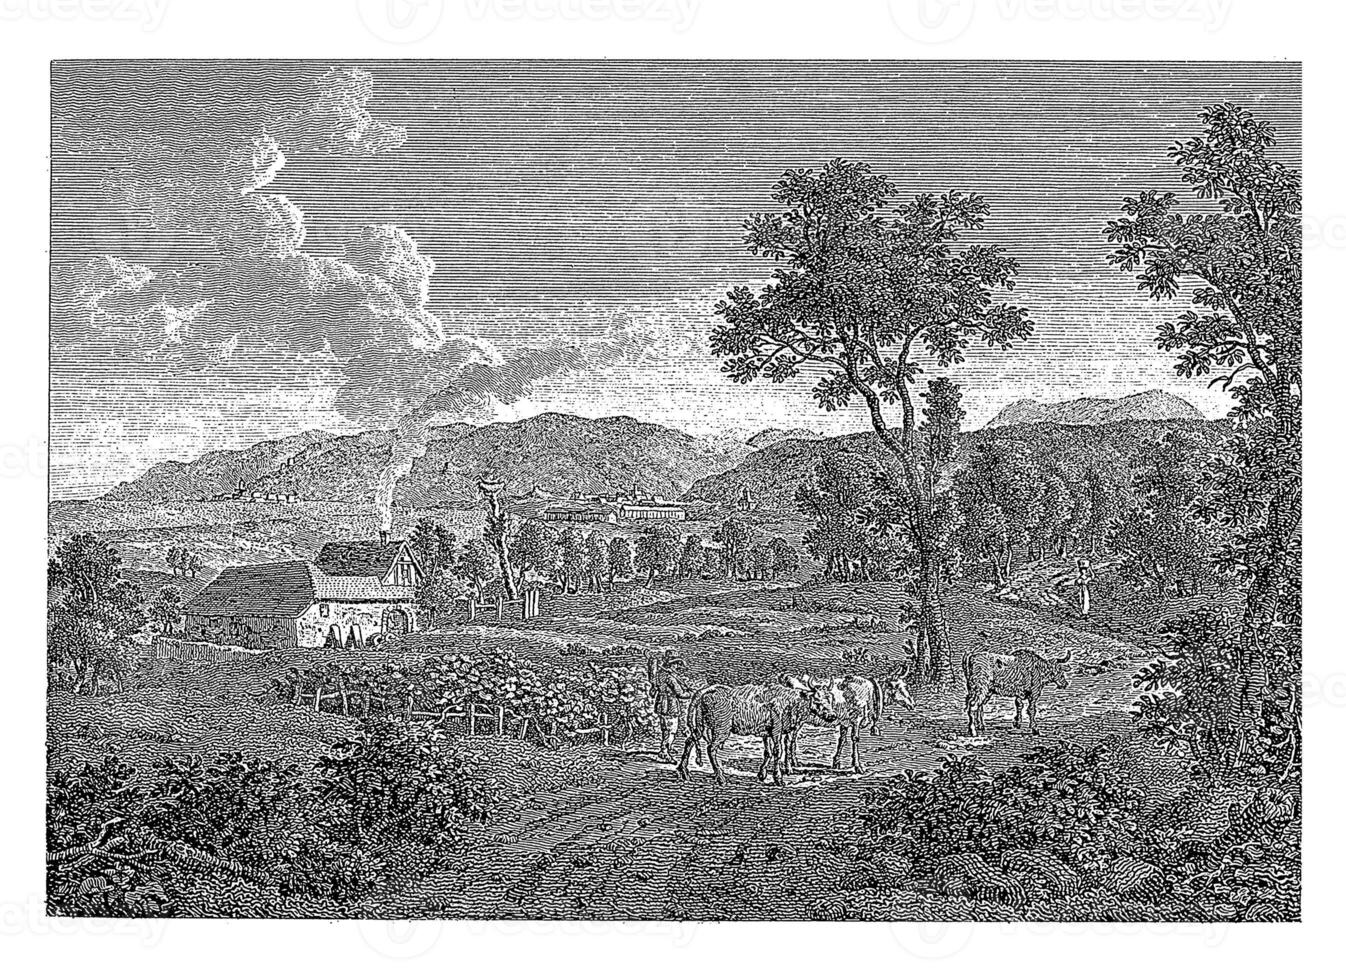 ver de el duro montañas, Jakob Wilhelm cristiano roux, 1822 foto